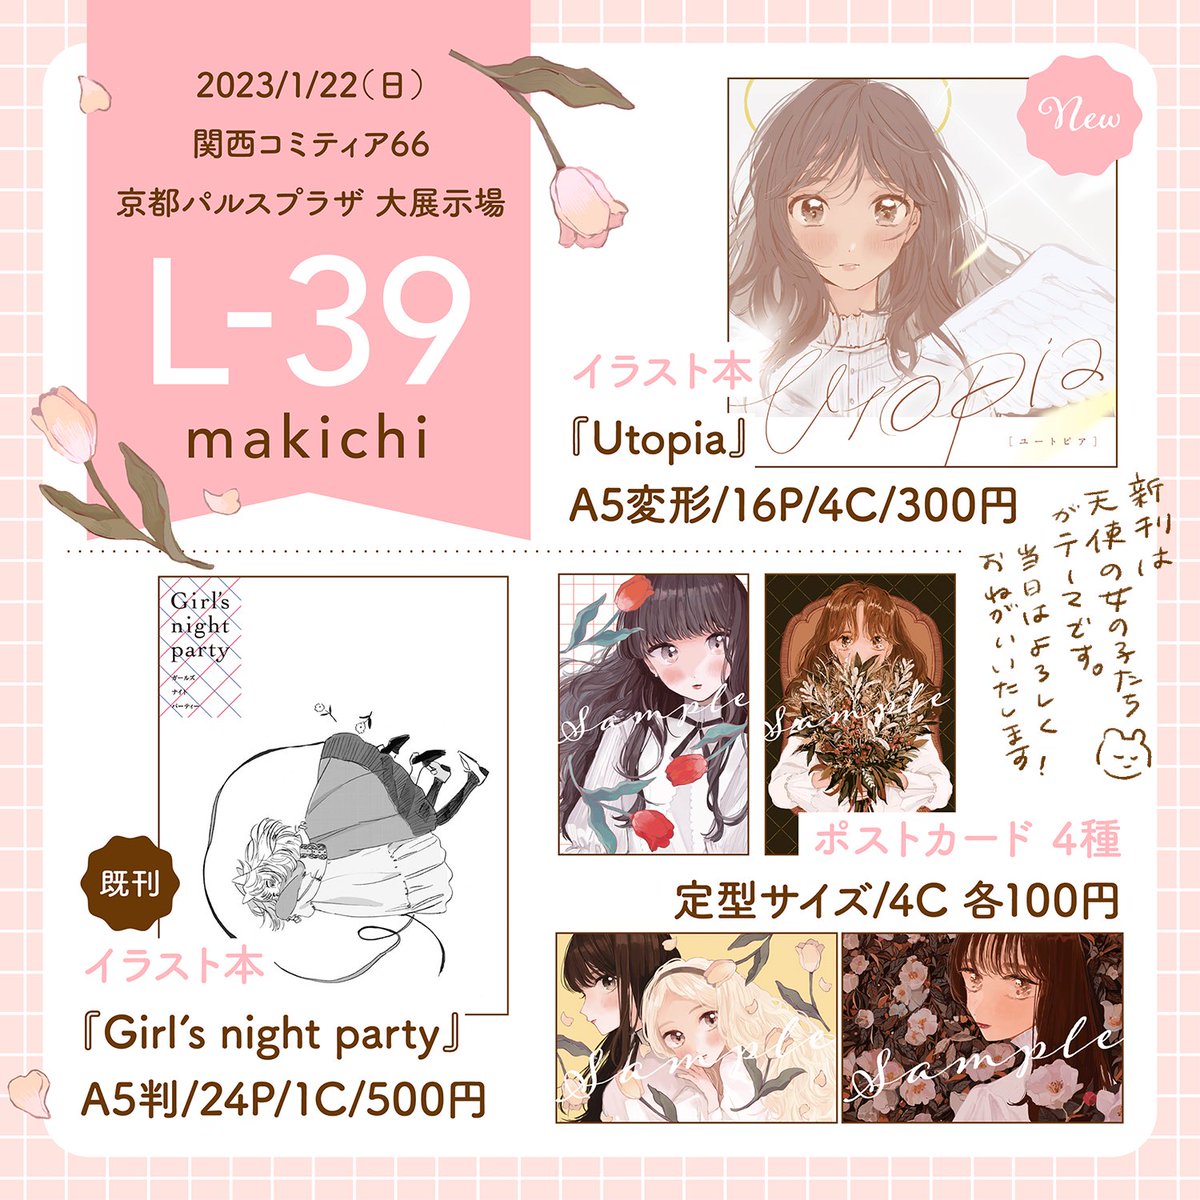 「関西コミティア66」にきづち(@nk_chako )と参加します。

--
○1/22(日)11:00 - 15:00
○京都パルスプラザ 大展示場
 L-39 makichi
--

天使の女の子たちを描いた新刊と、既刊、ポストカード4種を準備する予定です。よろしくお願いいたします!👼

#関西コミティア66 #関西コミティア 